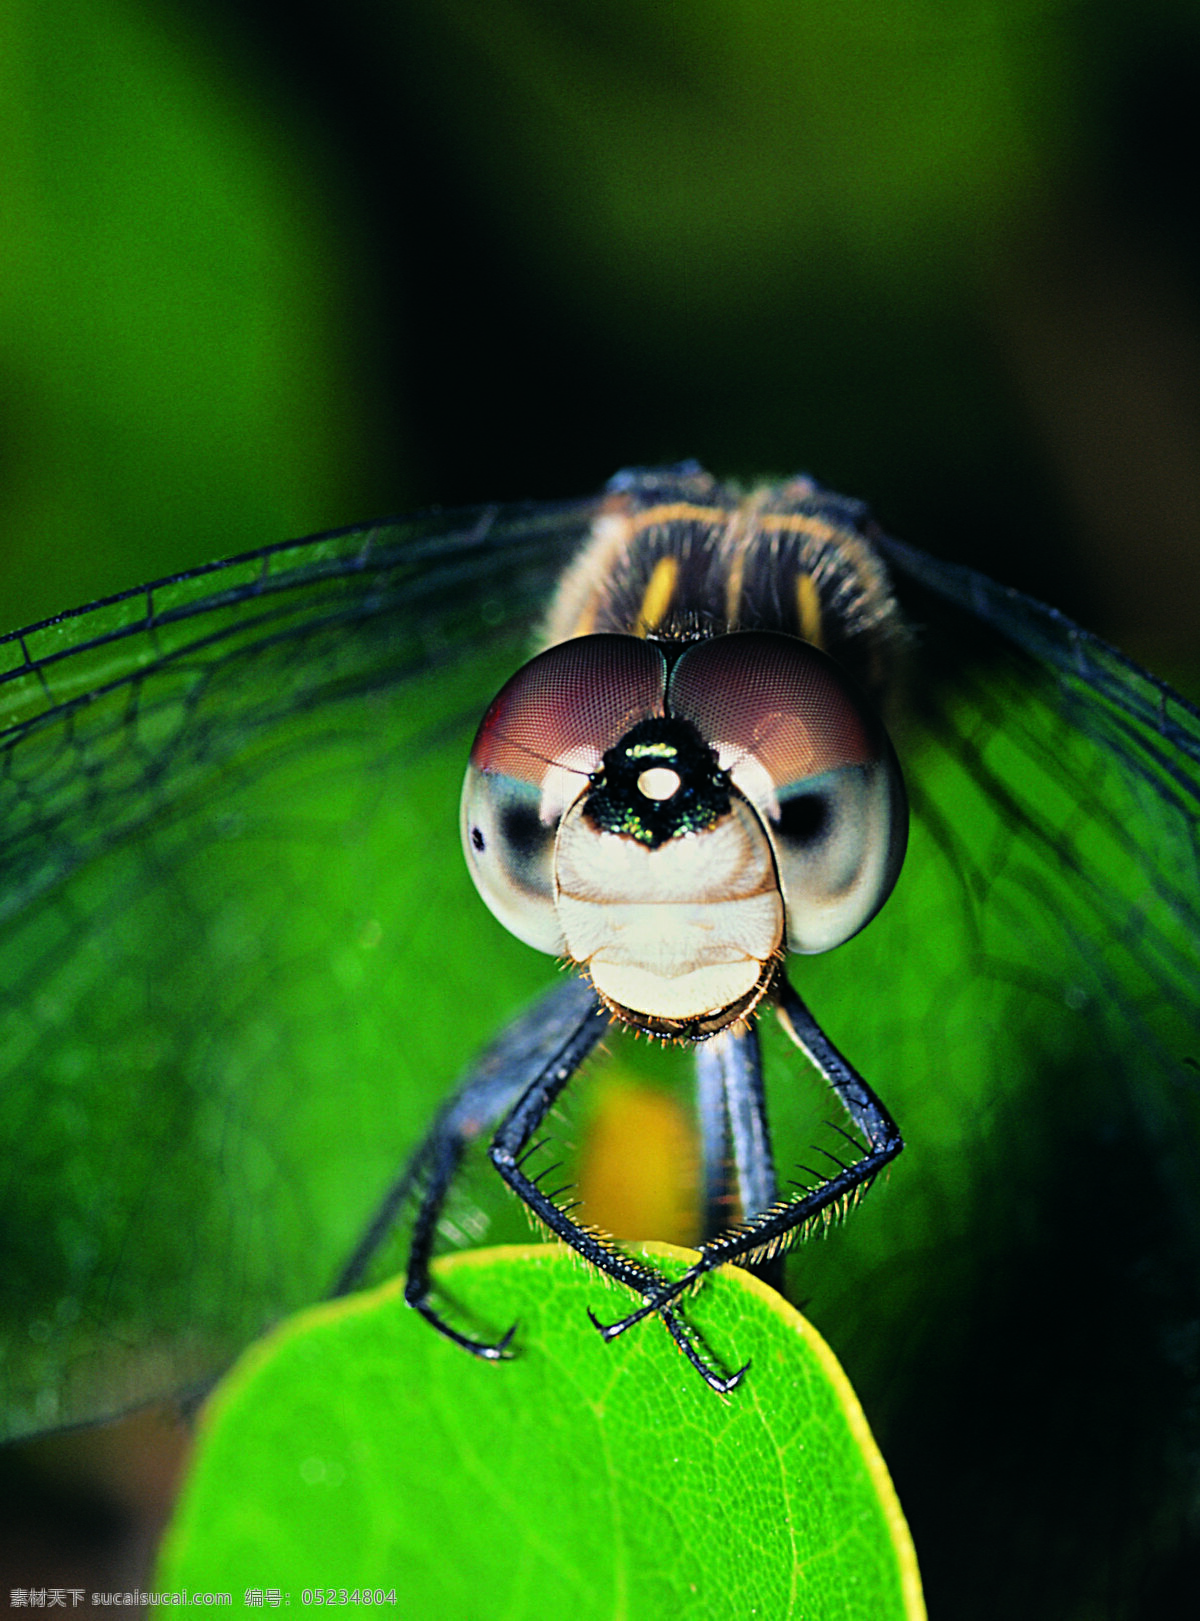 蜻蜓 昆虫 摄影图库 生物世界 头部 微观世界